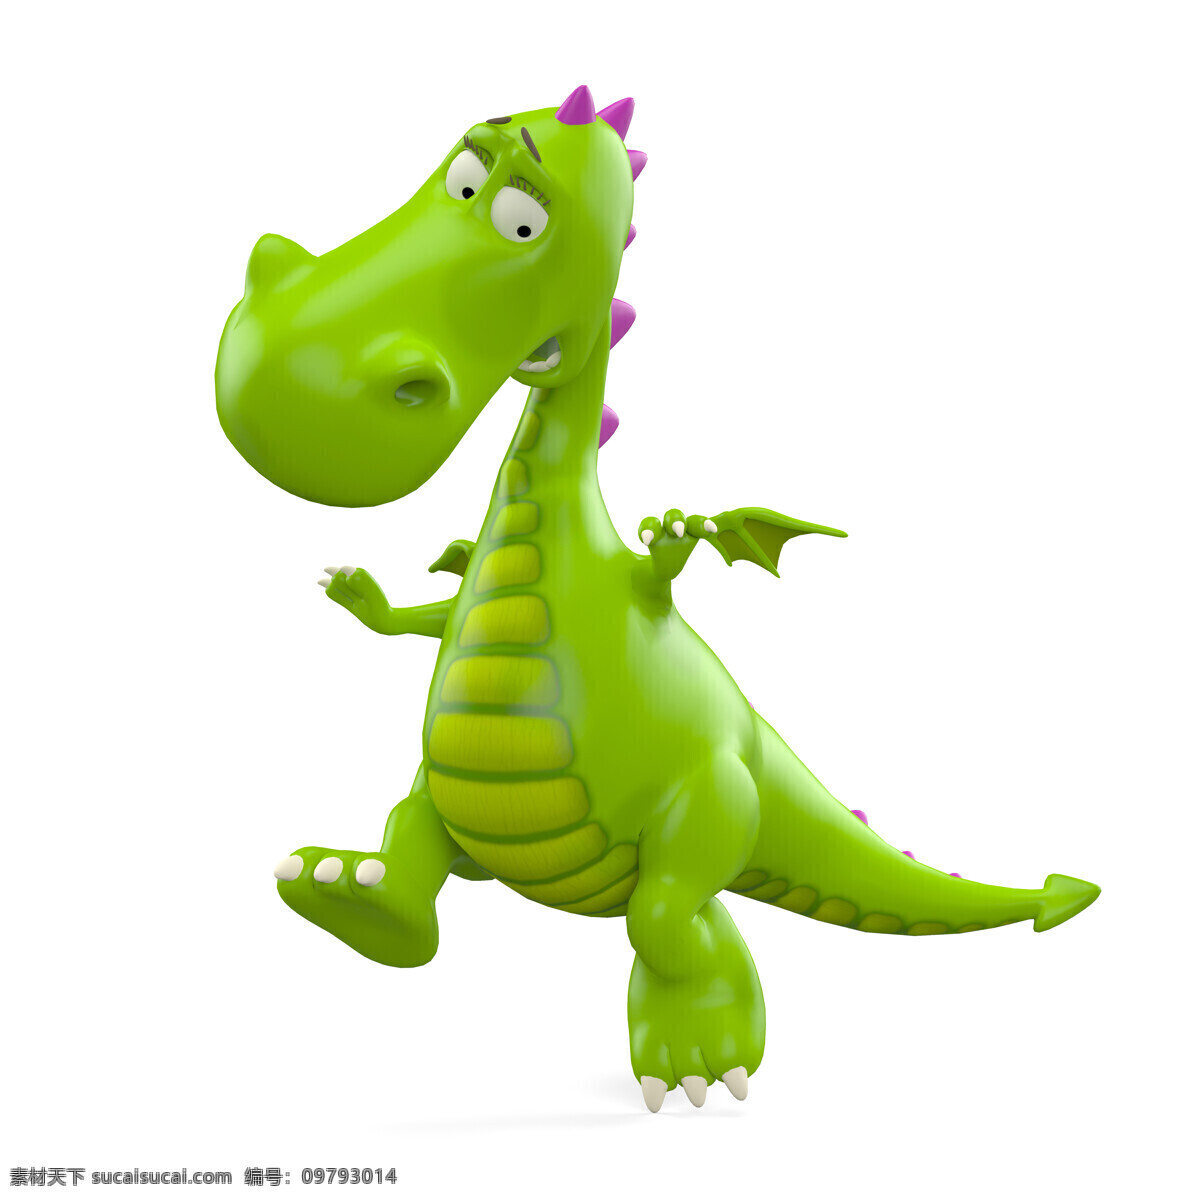 可爱 绿色 恐龙 绿色恐龙 卡通龙 插画 3d模型 西方龙 龙 行走 卡通动物 漫画插画 生物世界